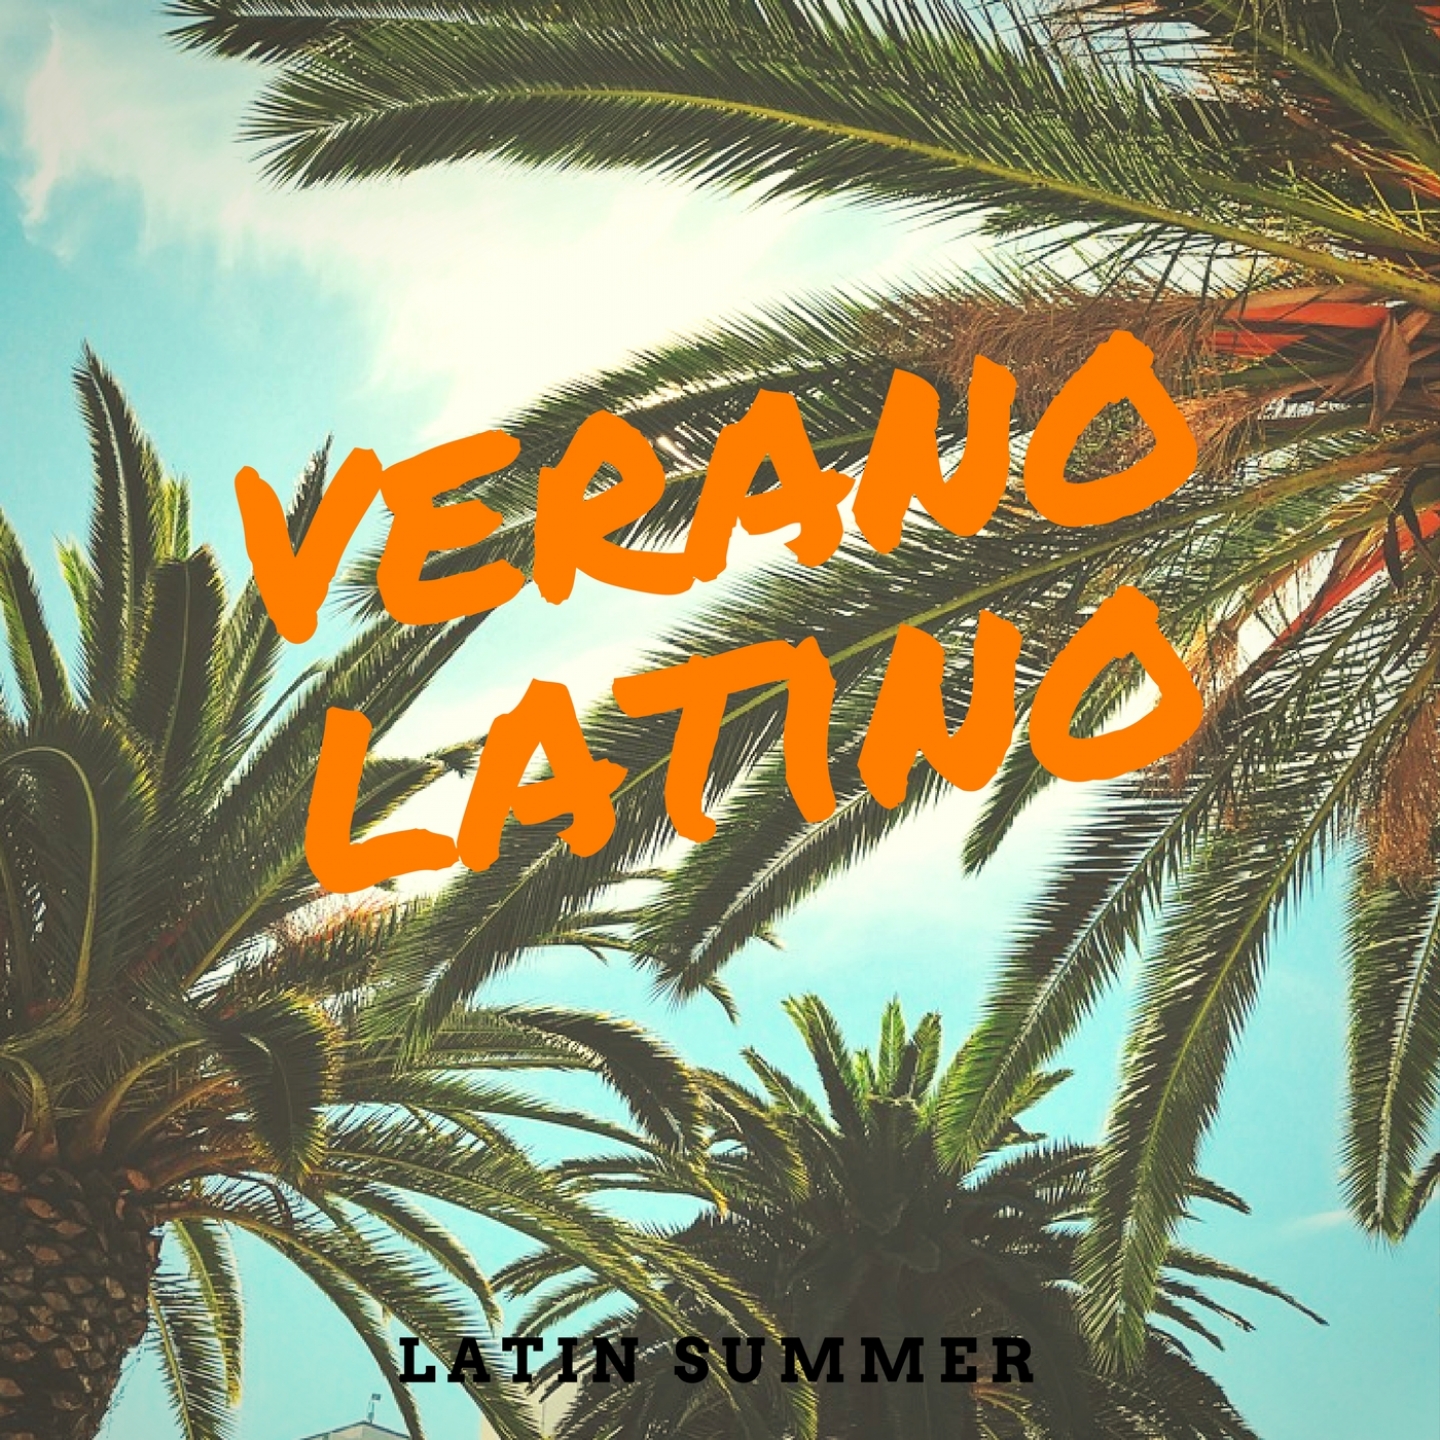 Verano Latino - Latin Summer